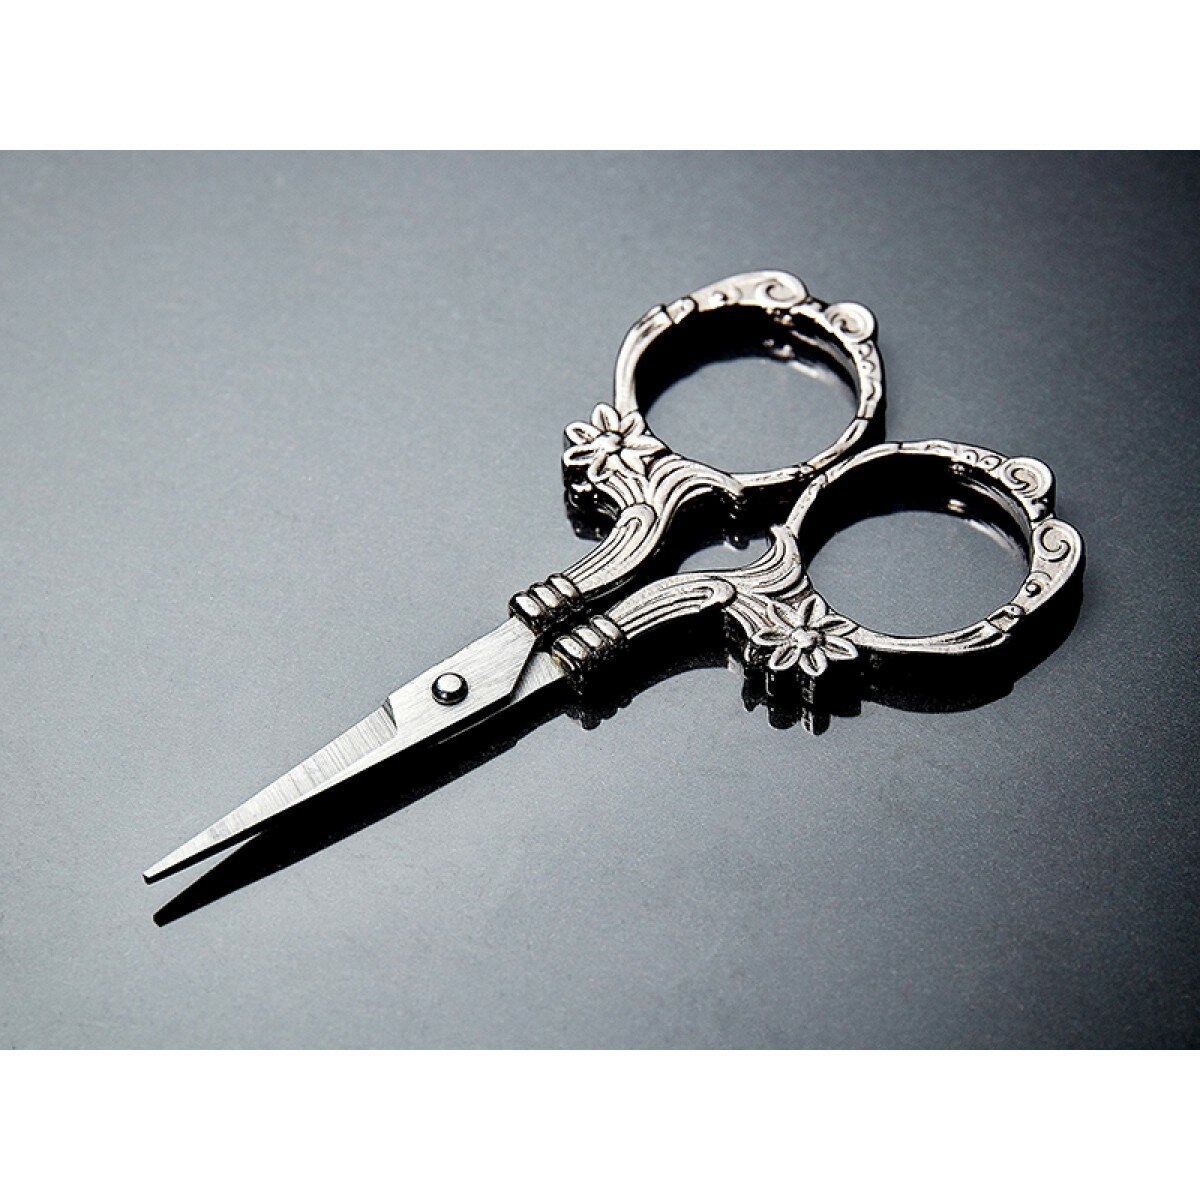 Ножницы для вышивания, 9,5 см 9,5 см серебро/черный металл HEMLINE B4727